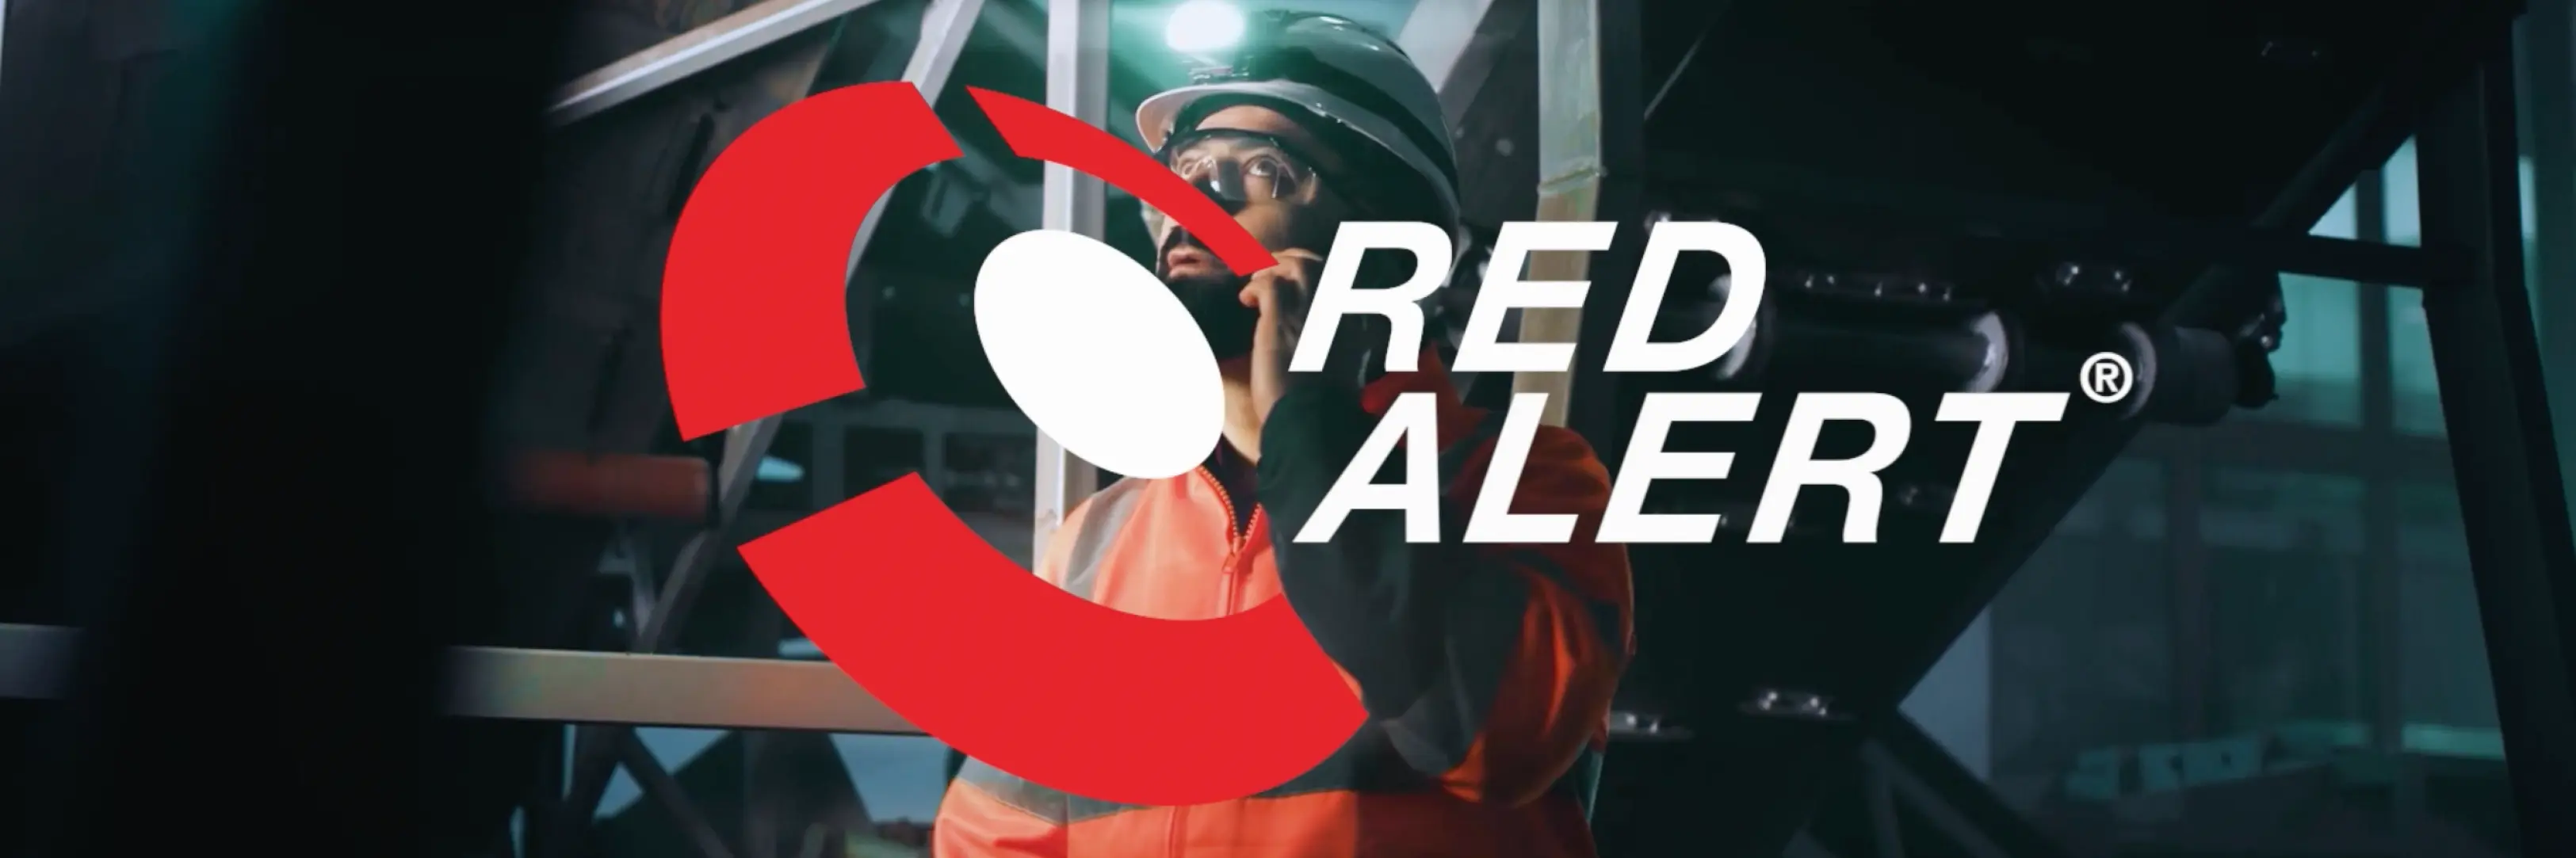 Un collaborateur de Belfor inspecte un dommage. Le texte est superposé à l'image: Red Alert.